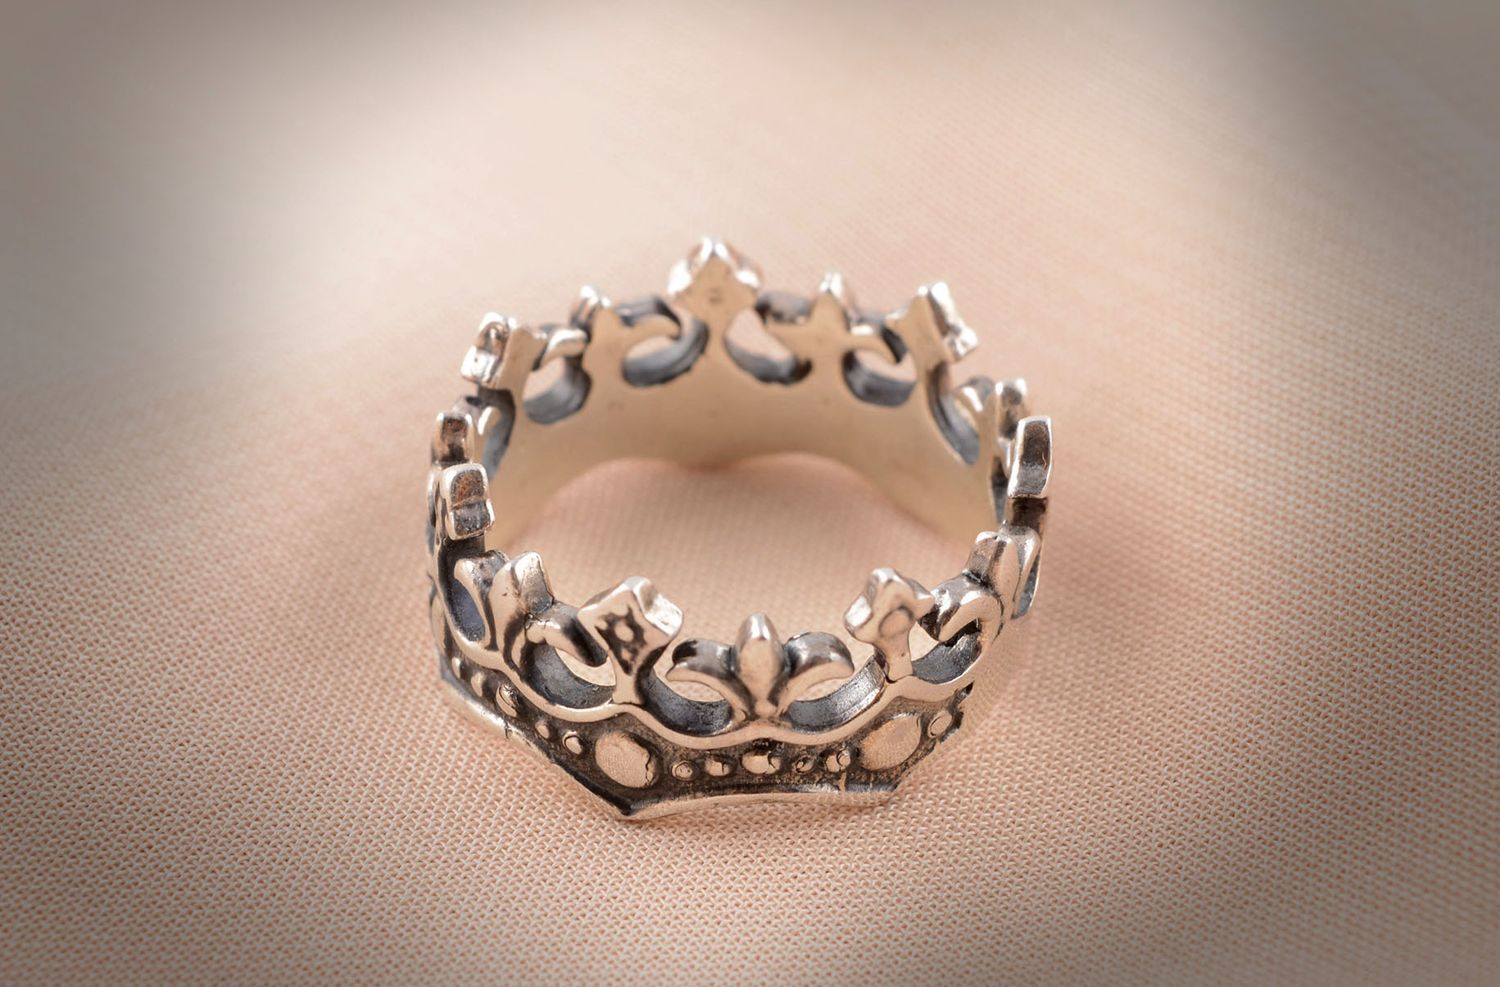 Handmade bronze jewelry bronze ring for women crown ring handmade jewelry photo 5